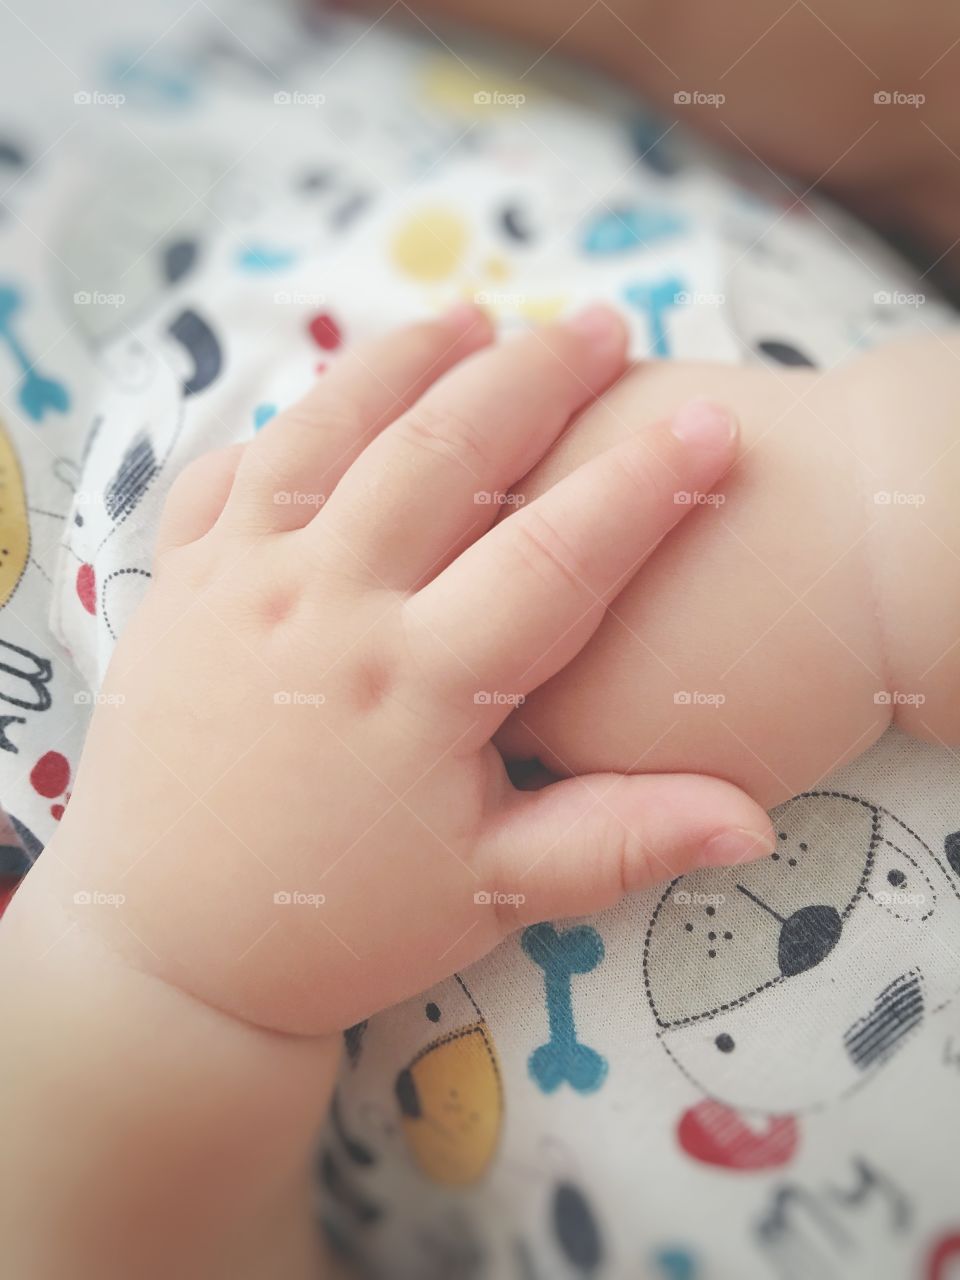 baby hands